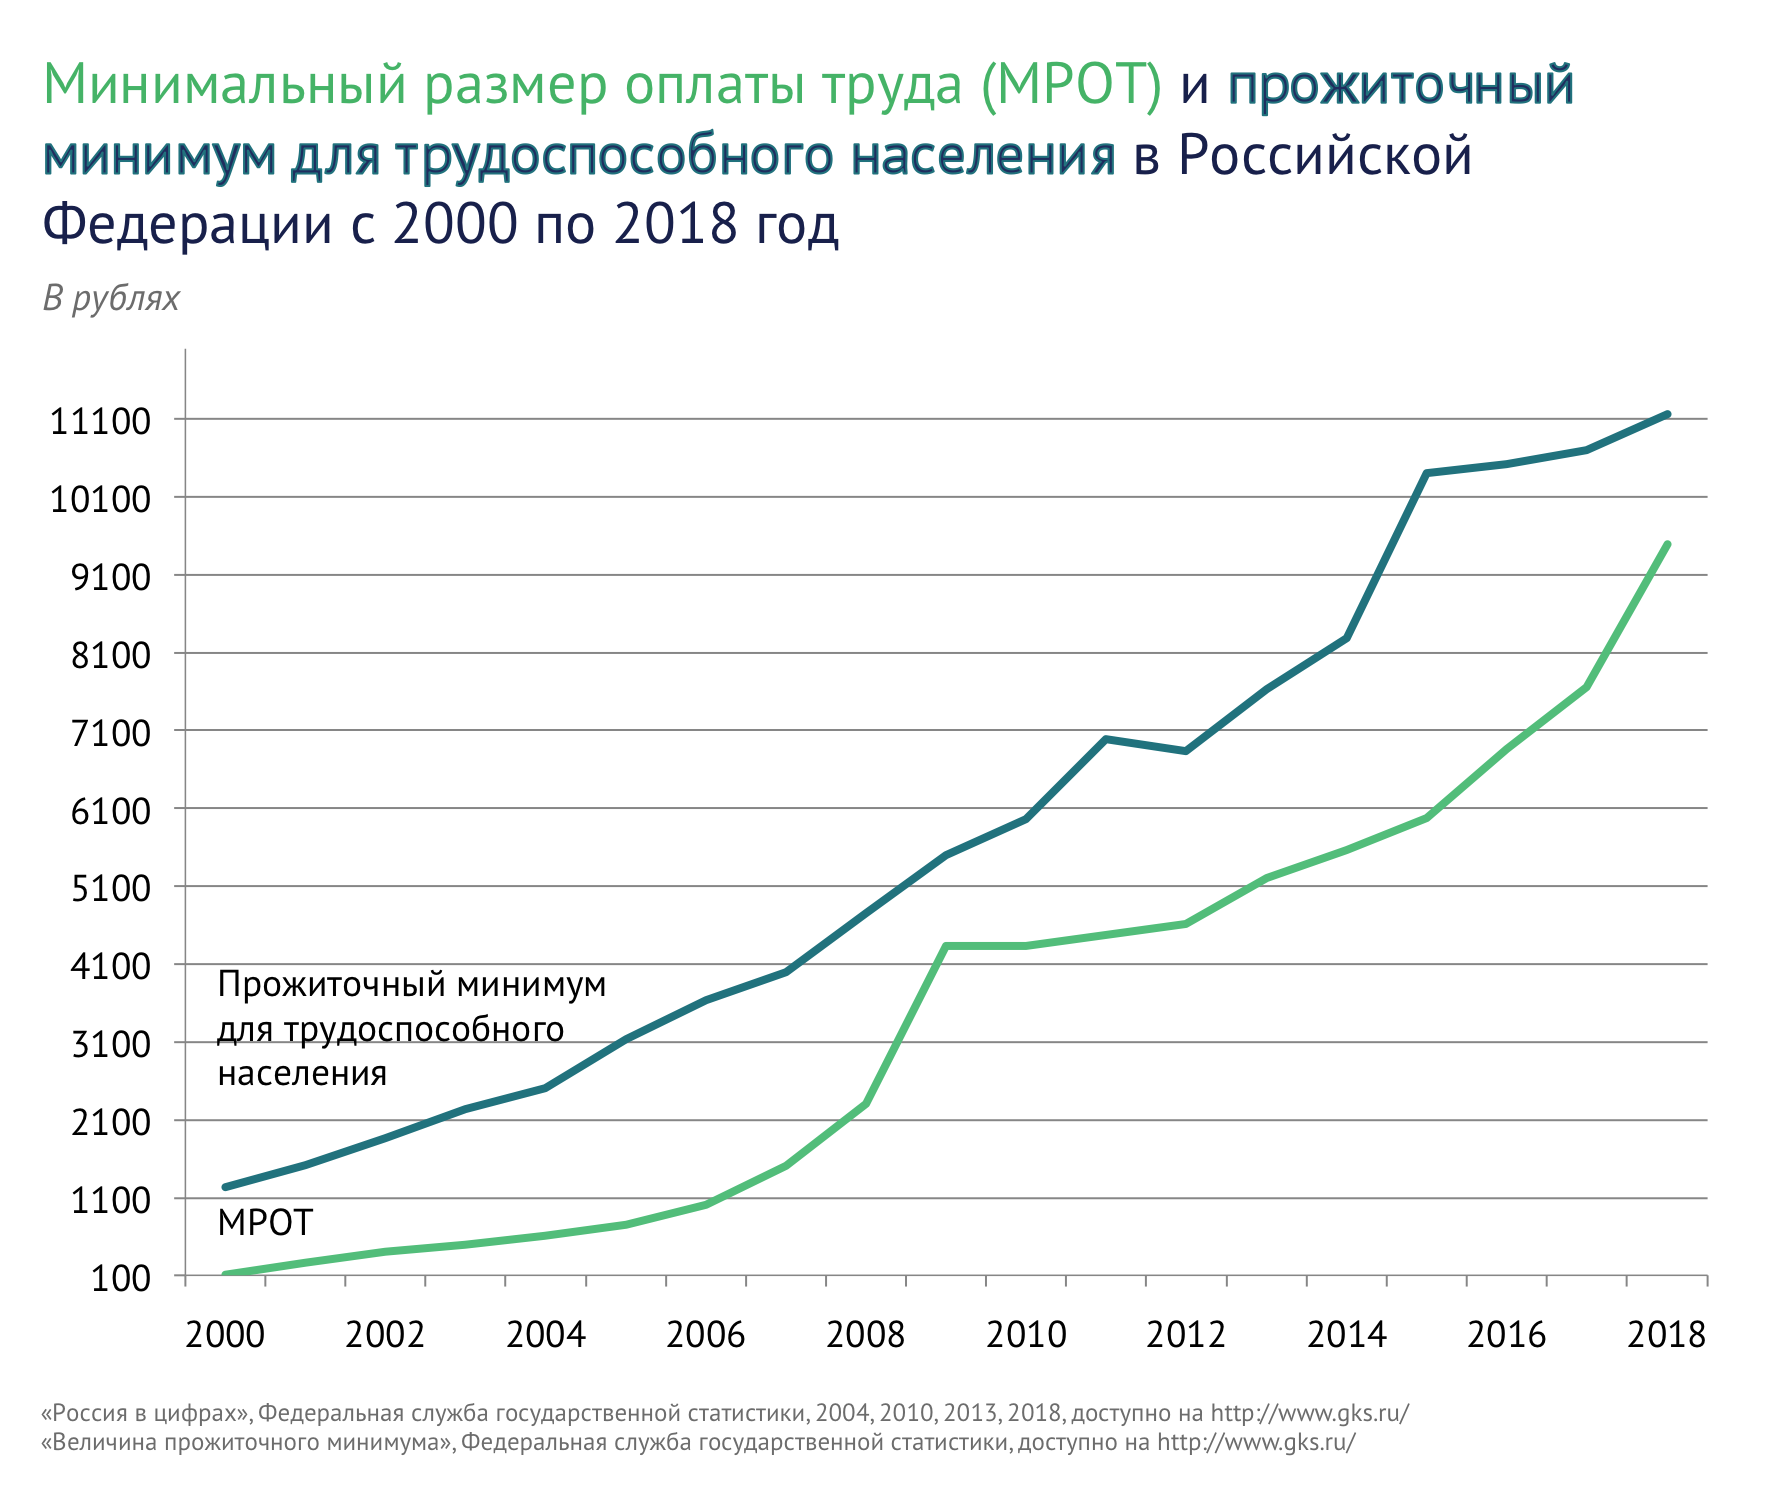 МРОТ и прожиточный минимум трудоспособного населения в Российской Федерации с 2000 по 2018 год